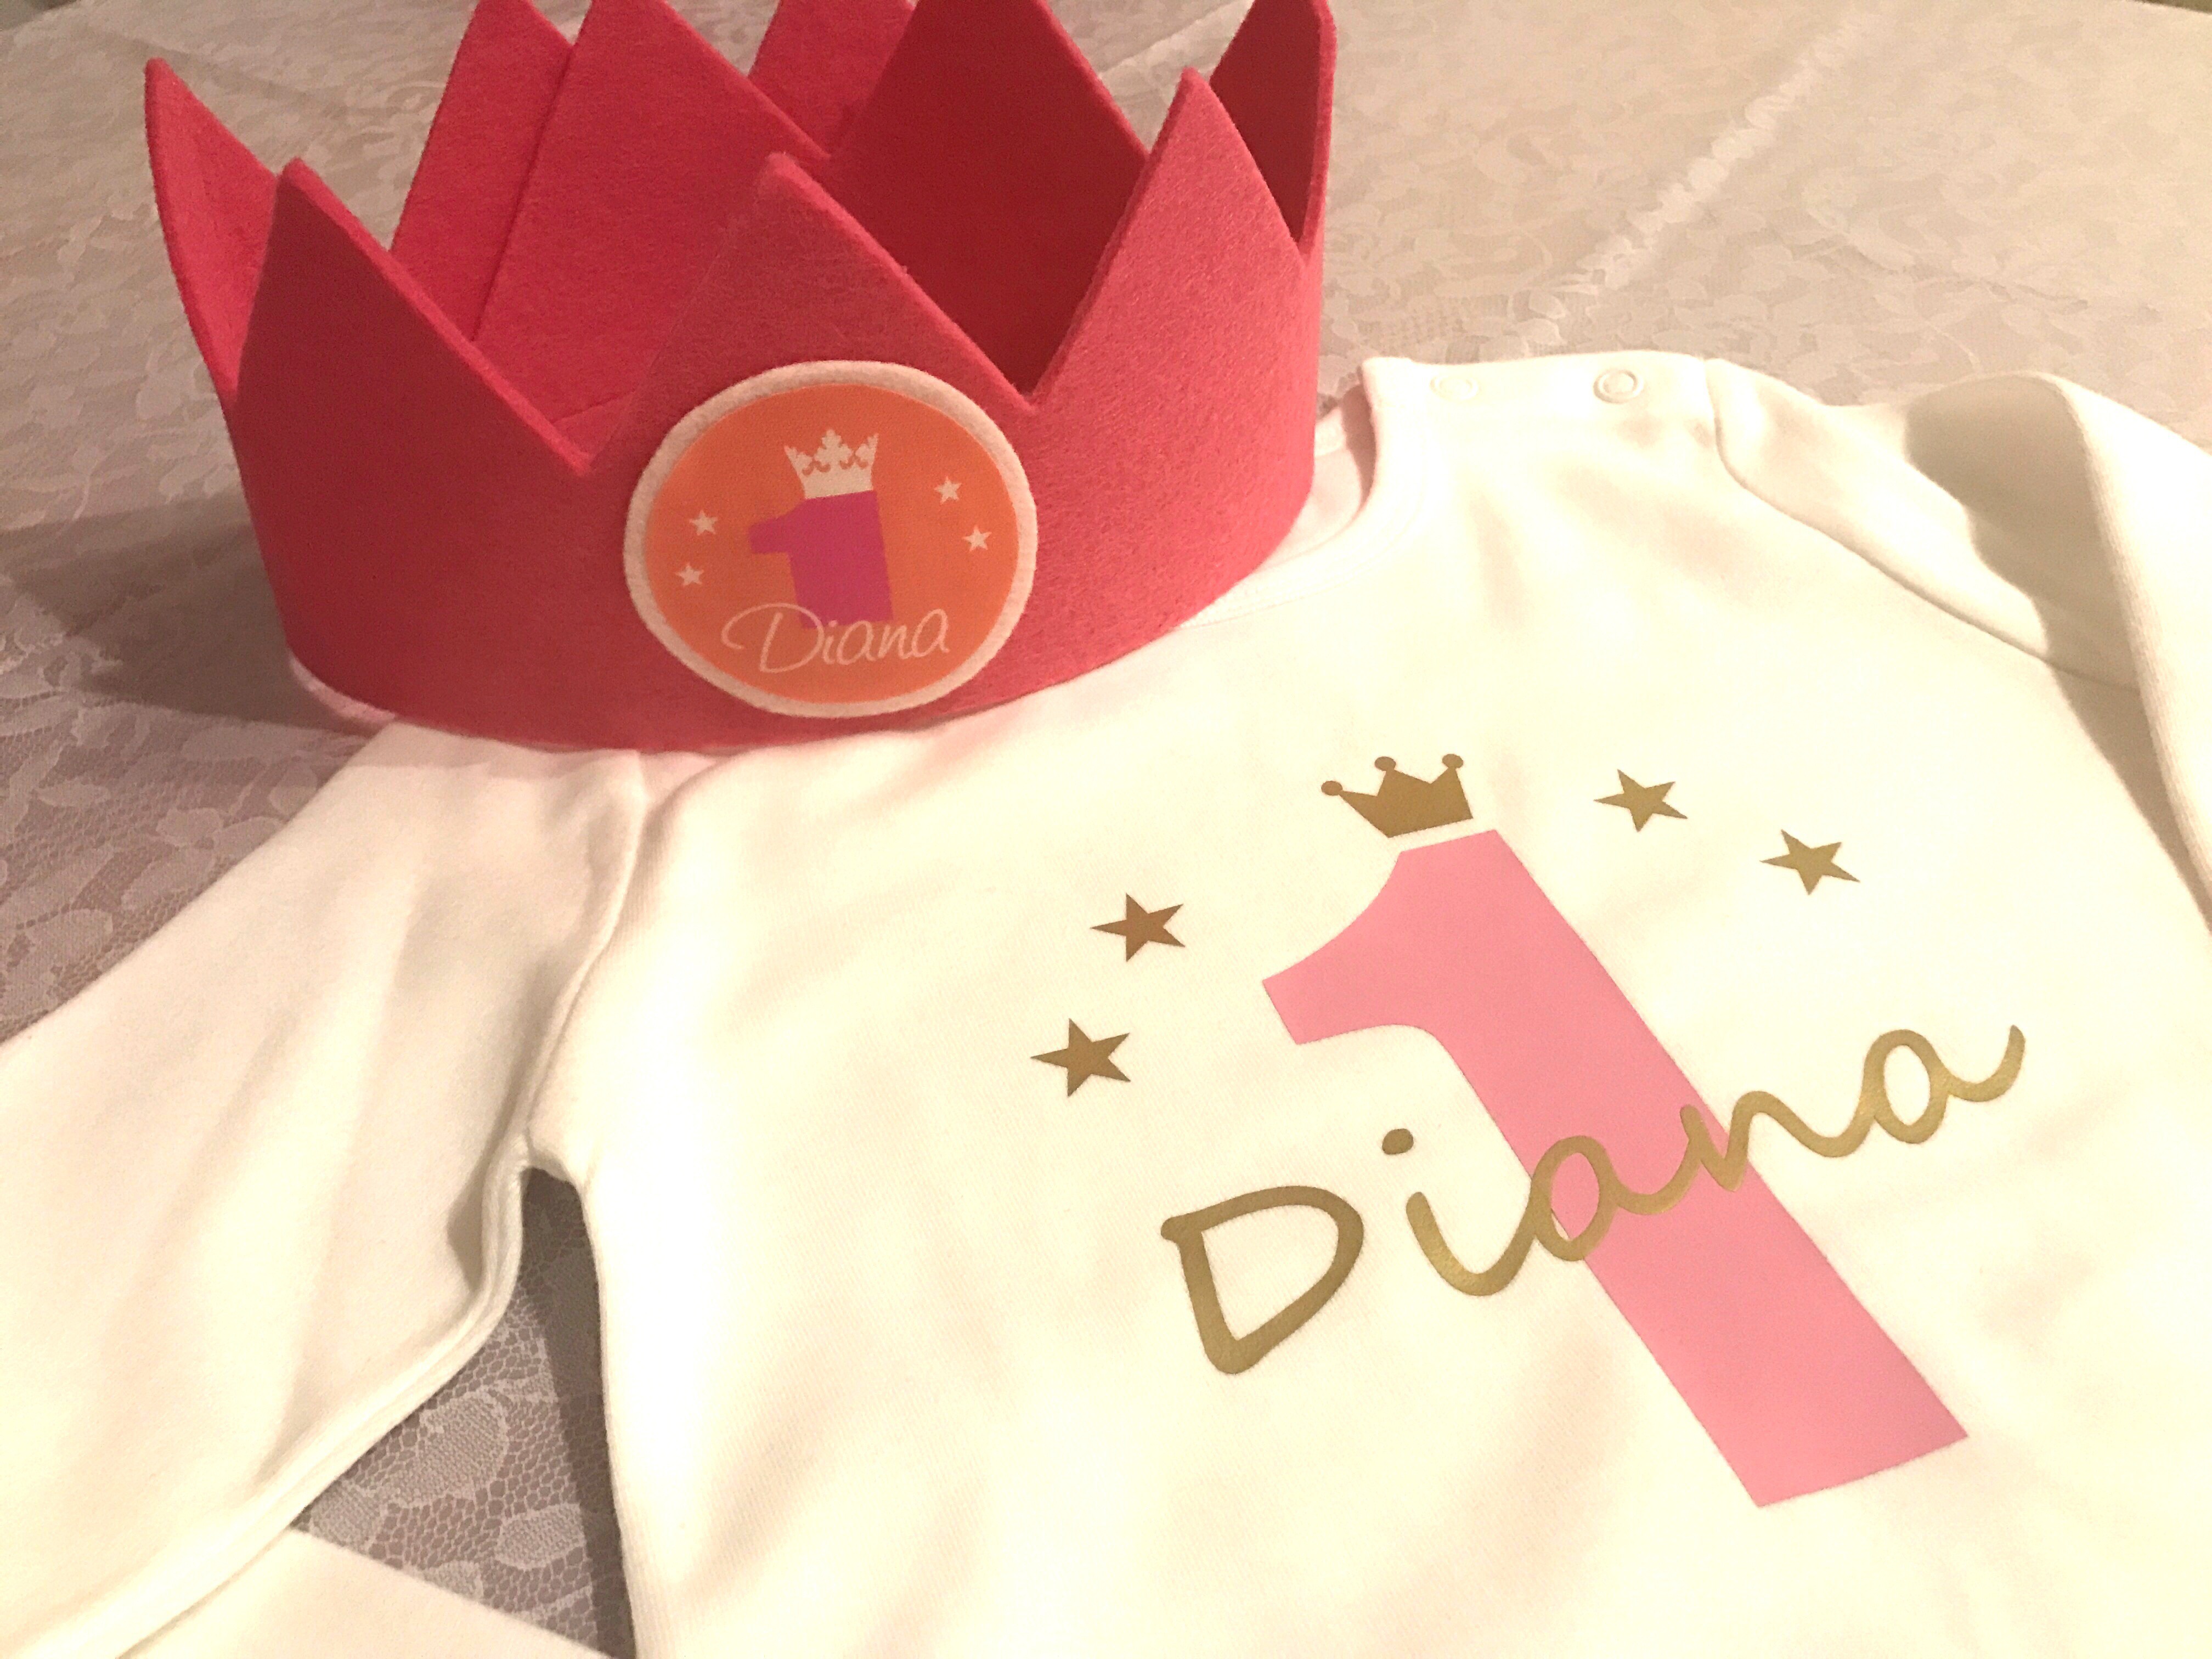 Der große Tag rückt näher - Dianas erster Geburtstag wird vorbereitet